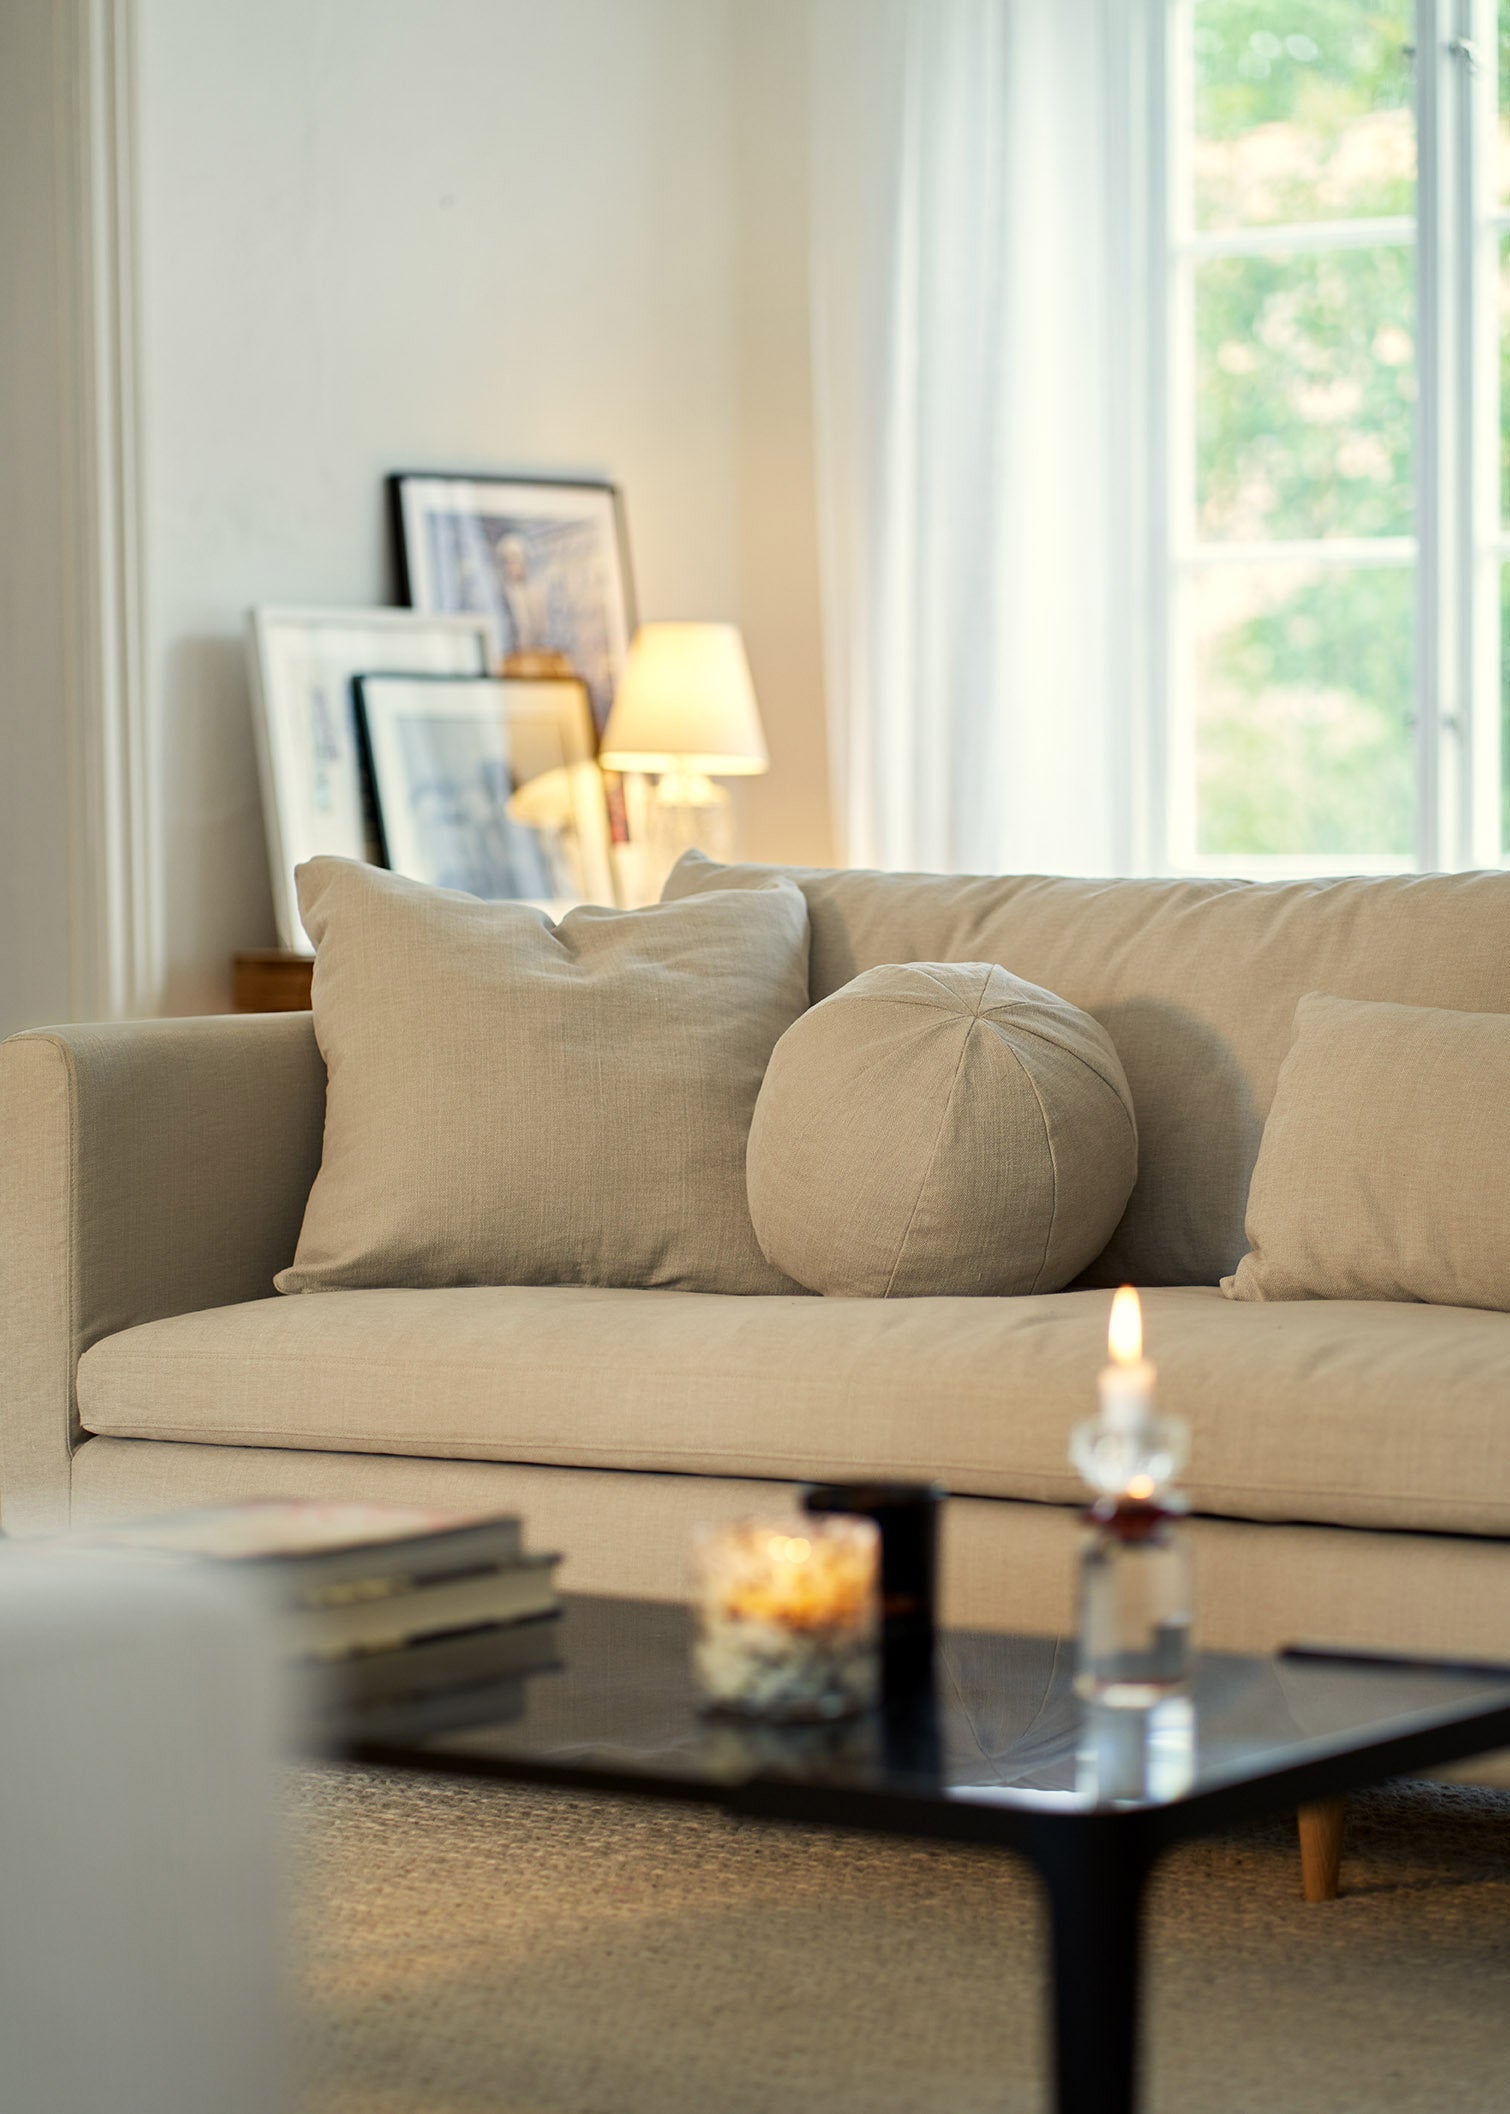 Lill 4-seter sofa, en del av kategorien 4-seter - At Home Interiør